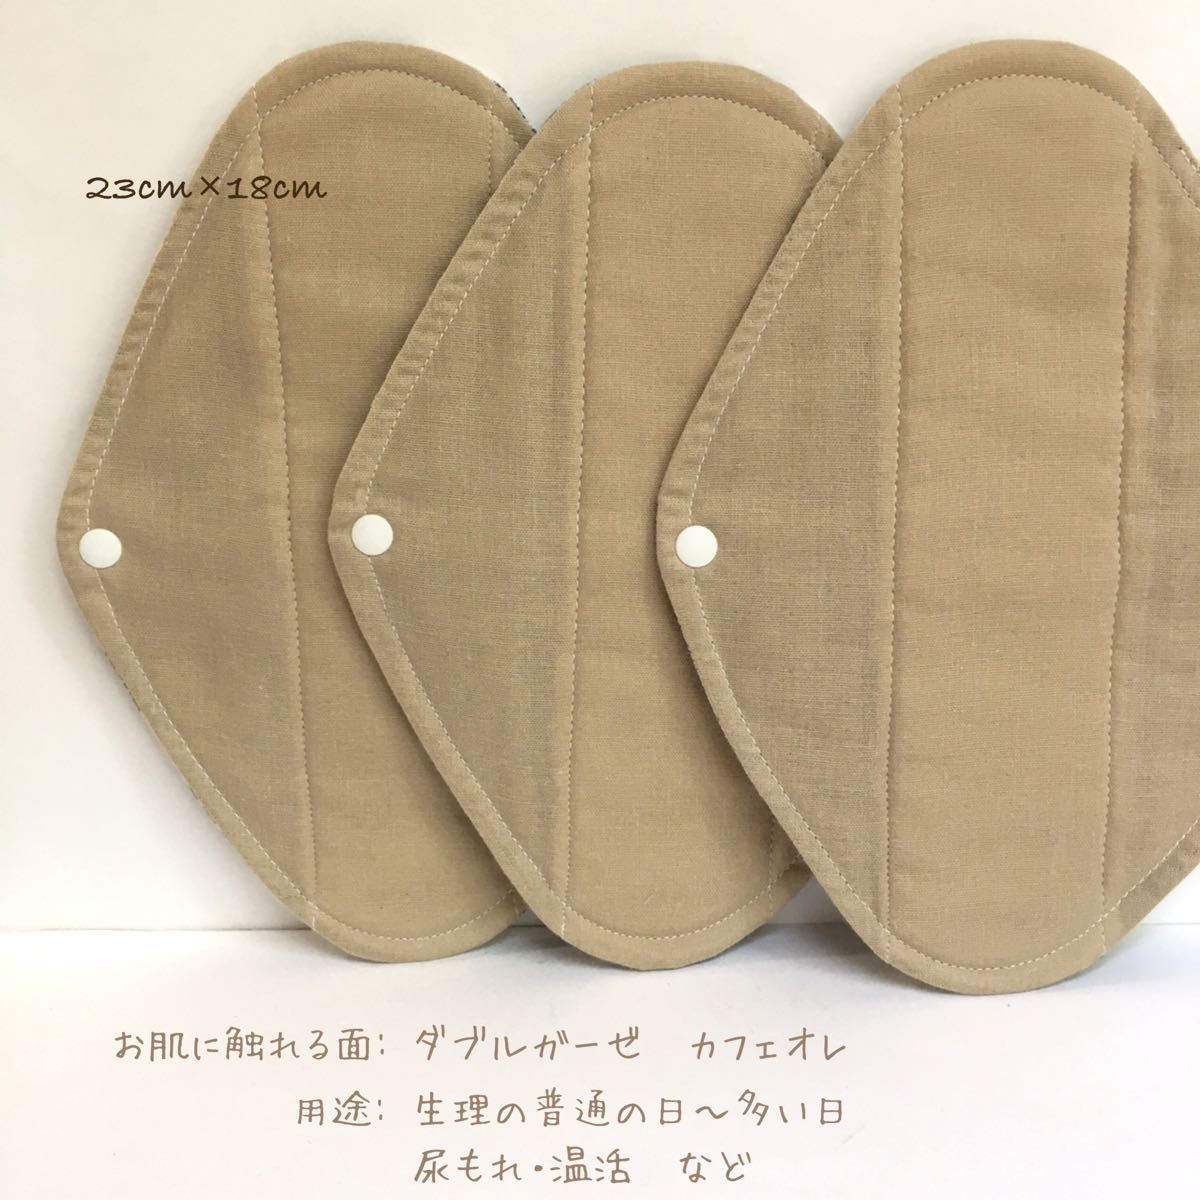 【1番人気】ダブルガーゼ カフェオレ 7層防水布ナプキン  3枚セット